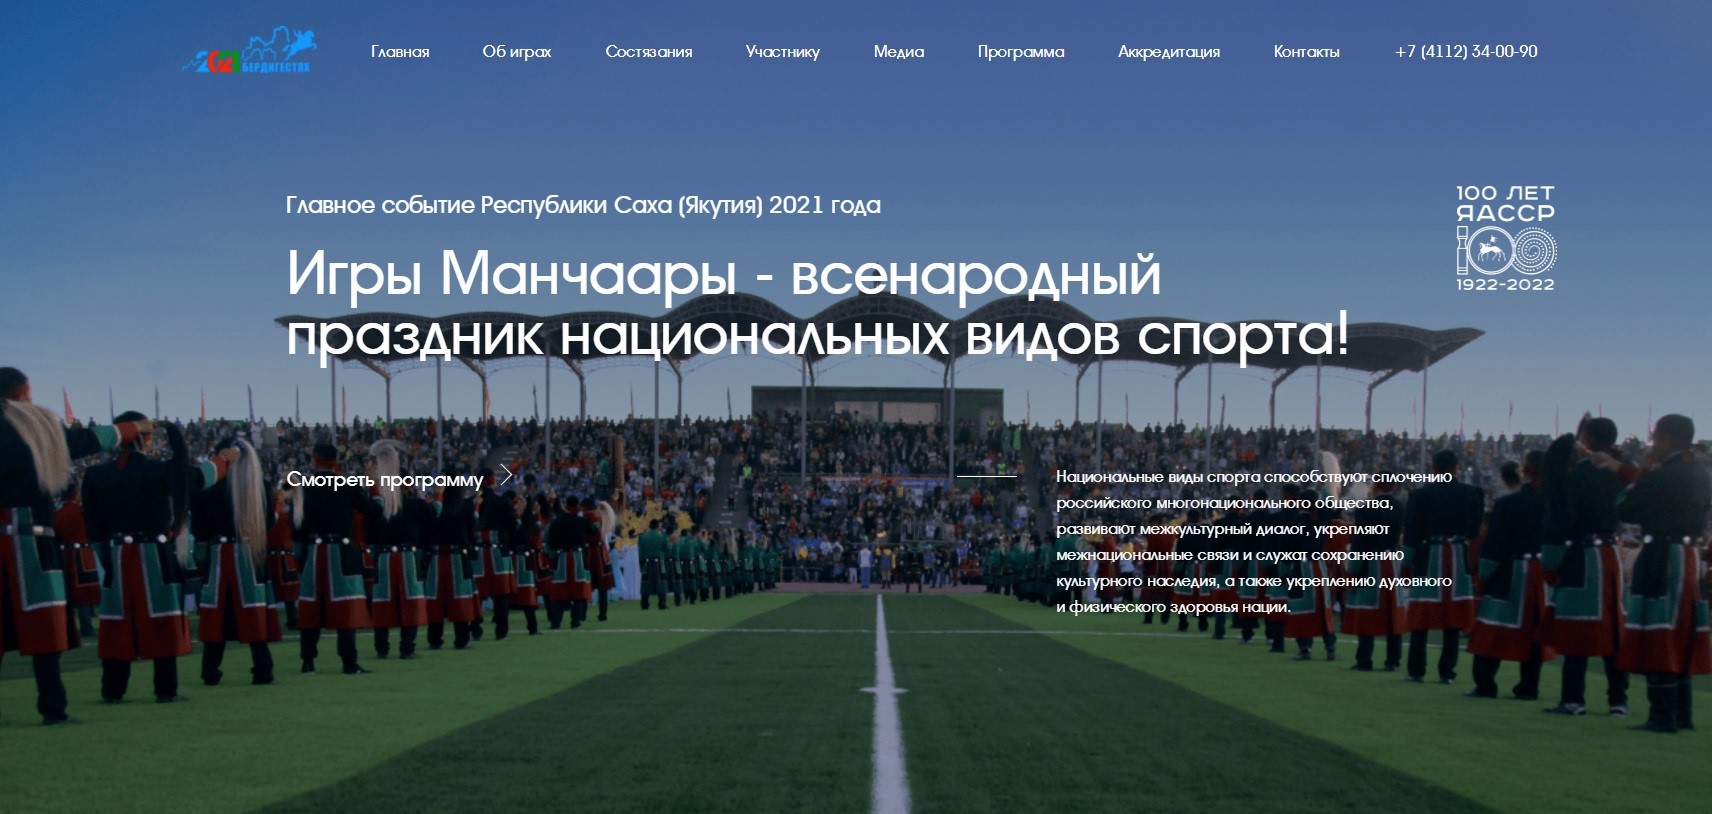 Официальный сайт Игр Манчаары презентовали в Якутске